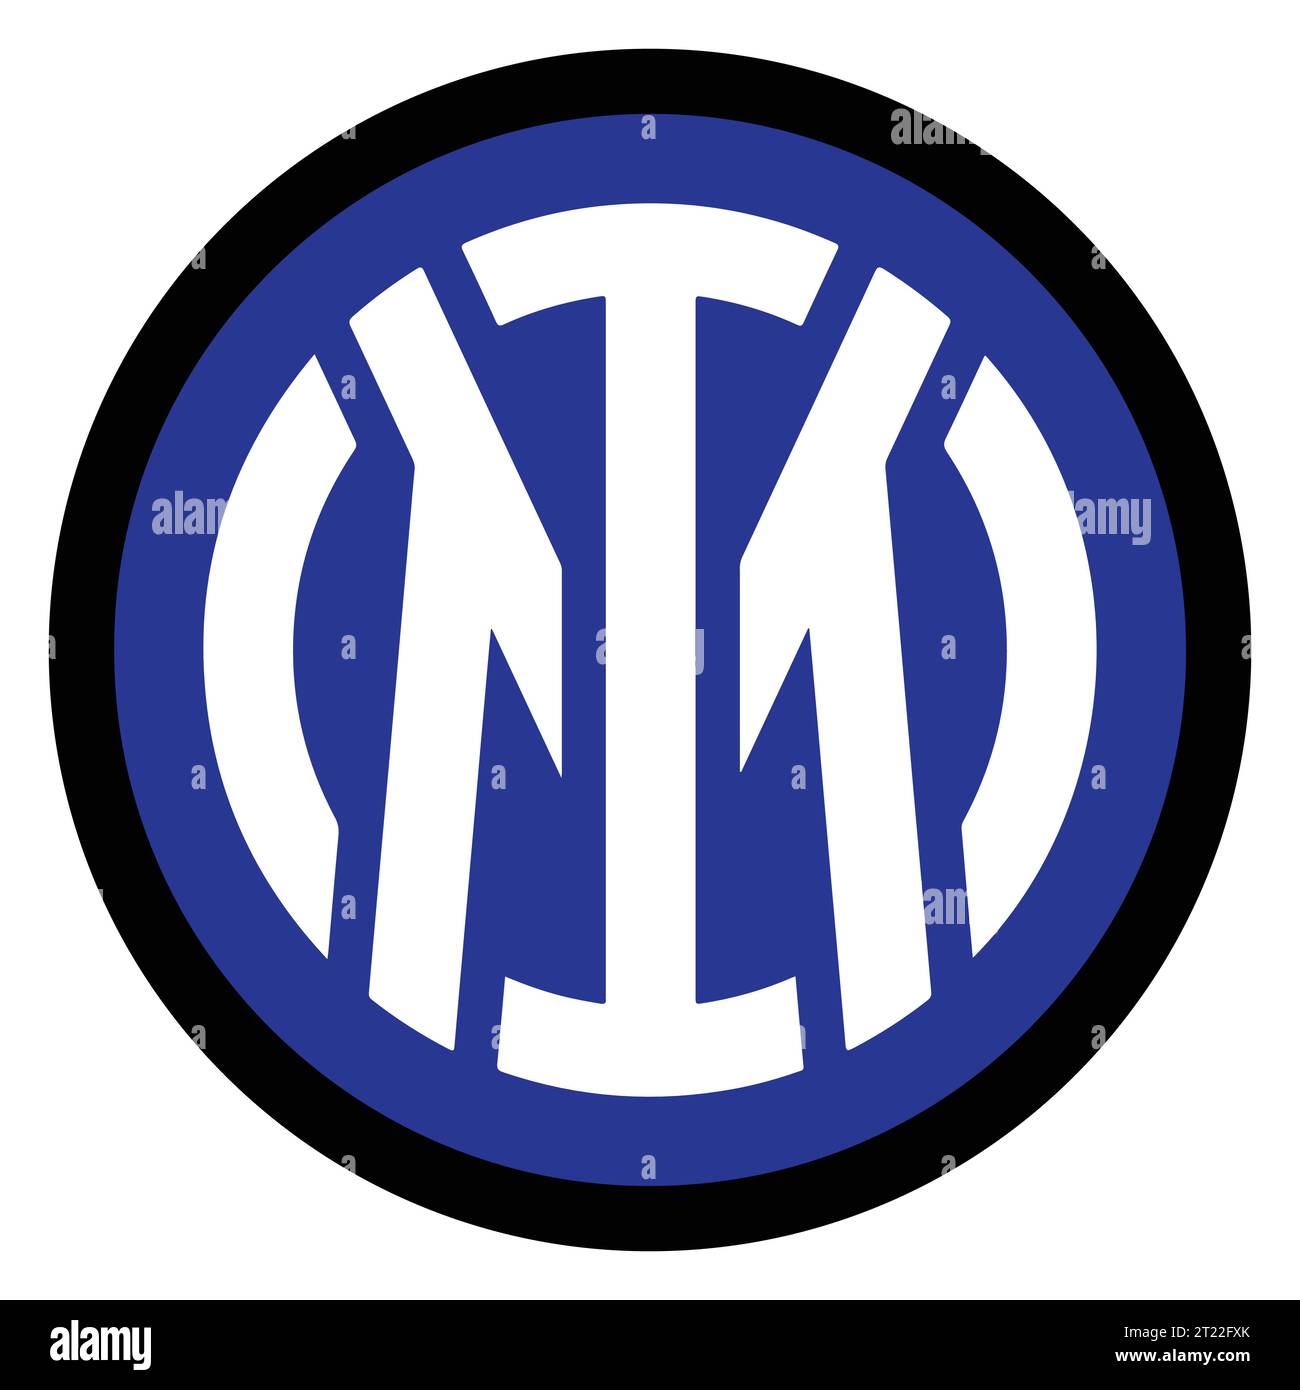 Inter Milan Logo colorato club di calcio professionistico italiano, illustrazione vettoriale immagine astratta Illustrazione Vettoriale